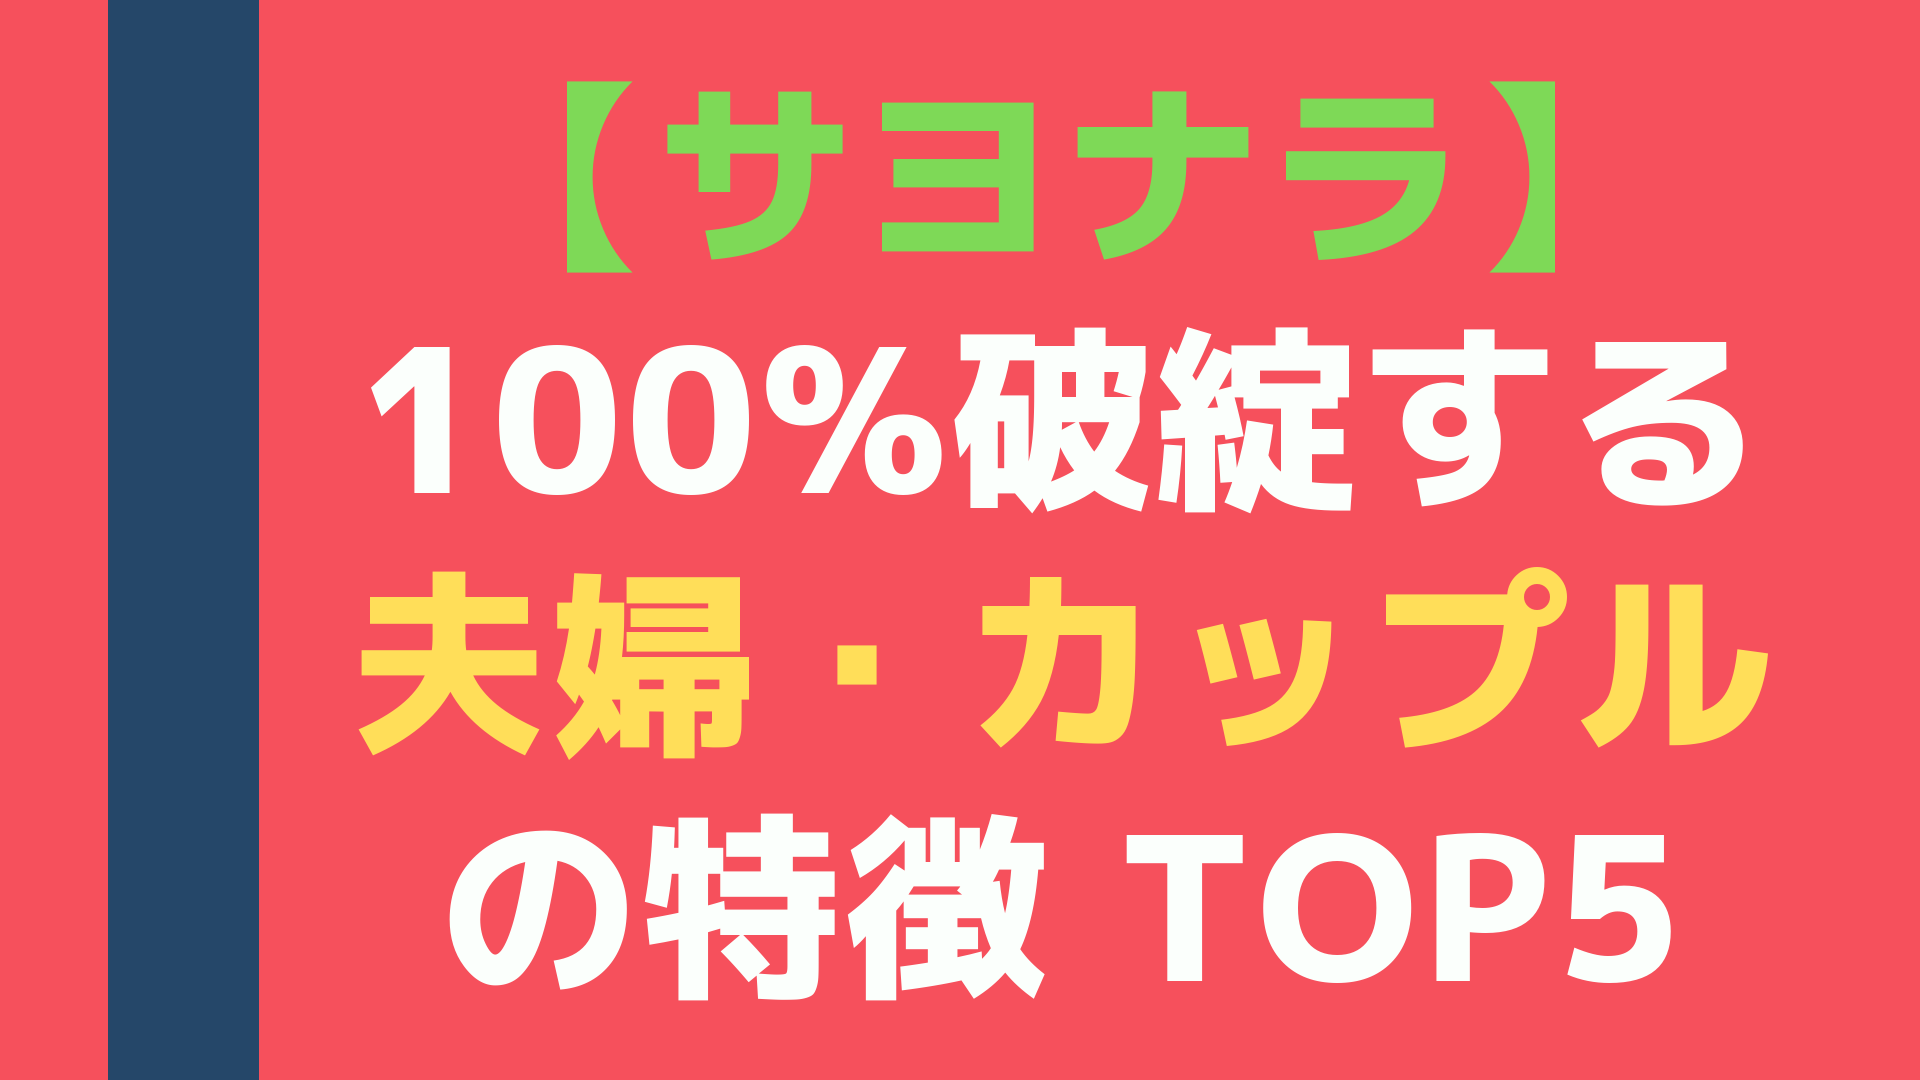 【サヨナラ】100%破綻する夫婦・カップルの特徴 TOP5